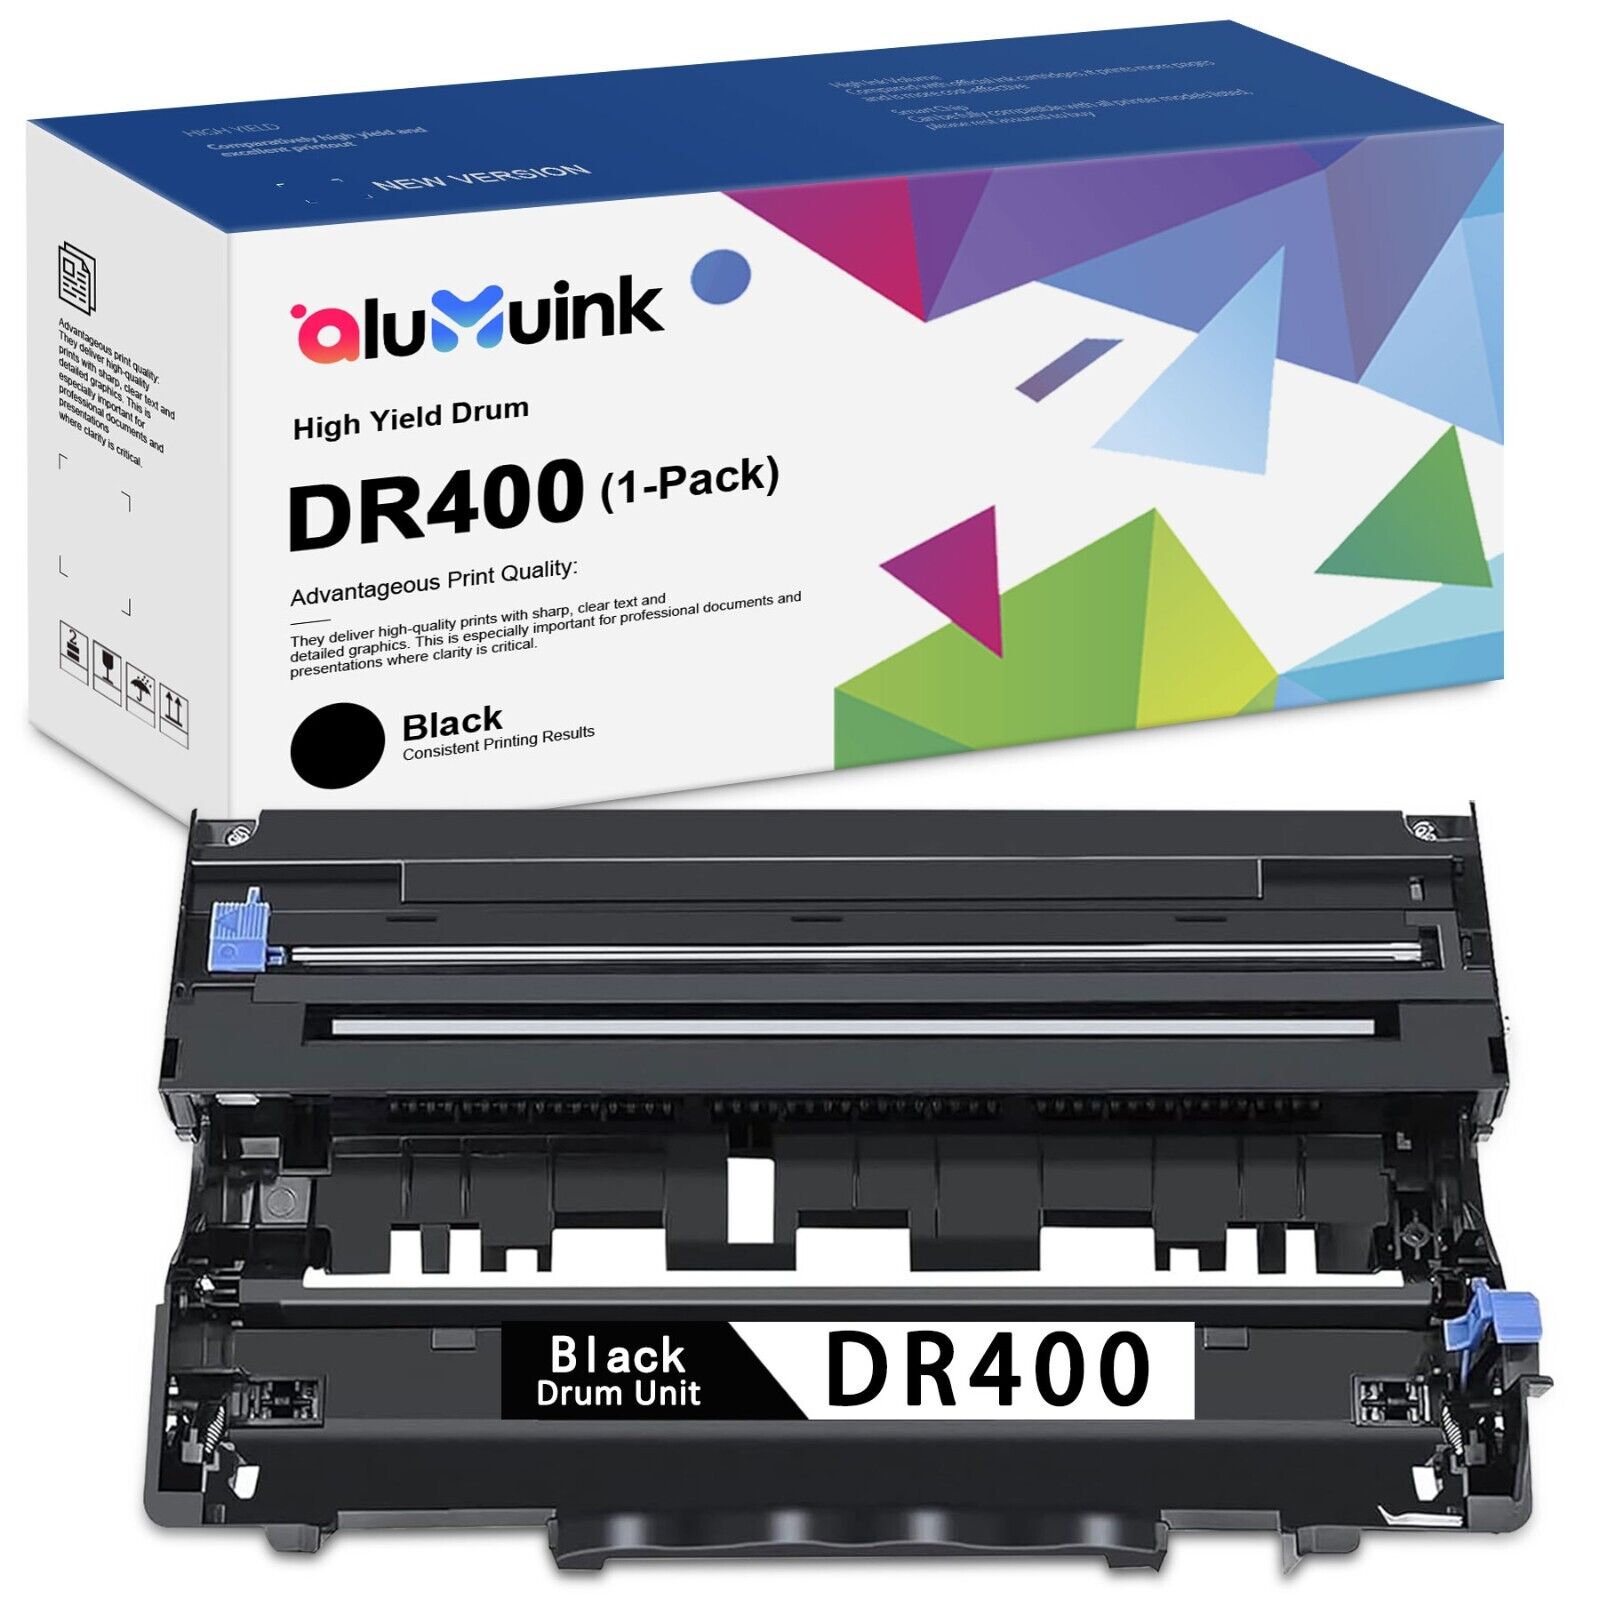 DR400 Black Drum Unit Replacement for Brother DR400 DR-400 Drum Unit MFC-8600